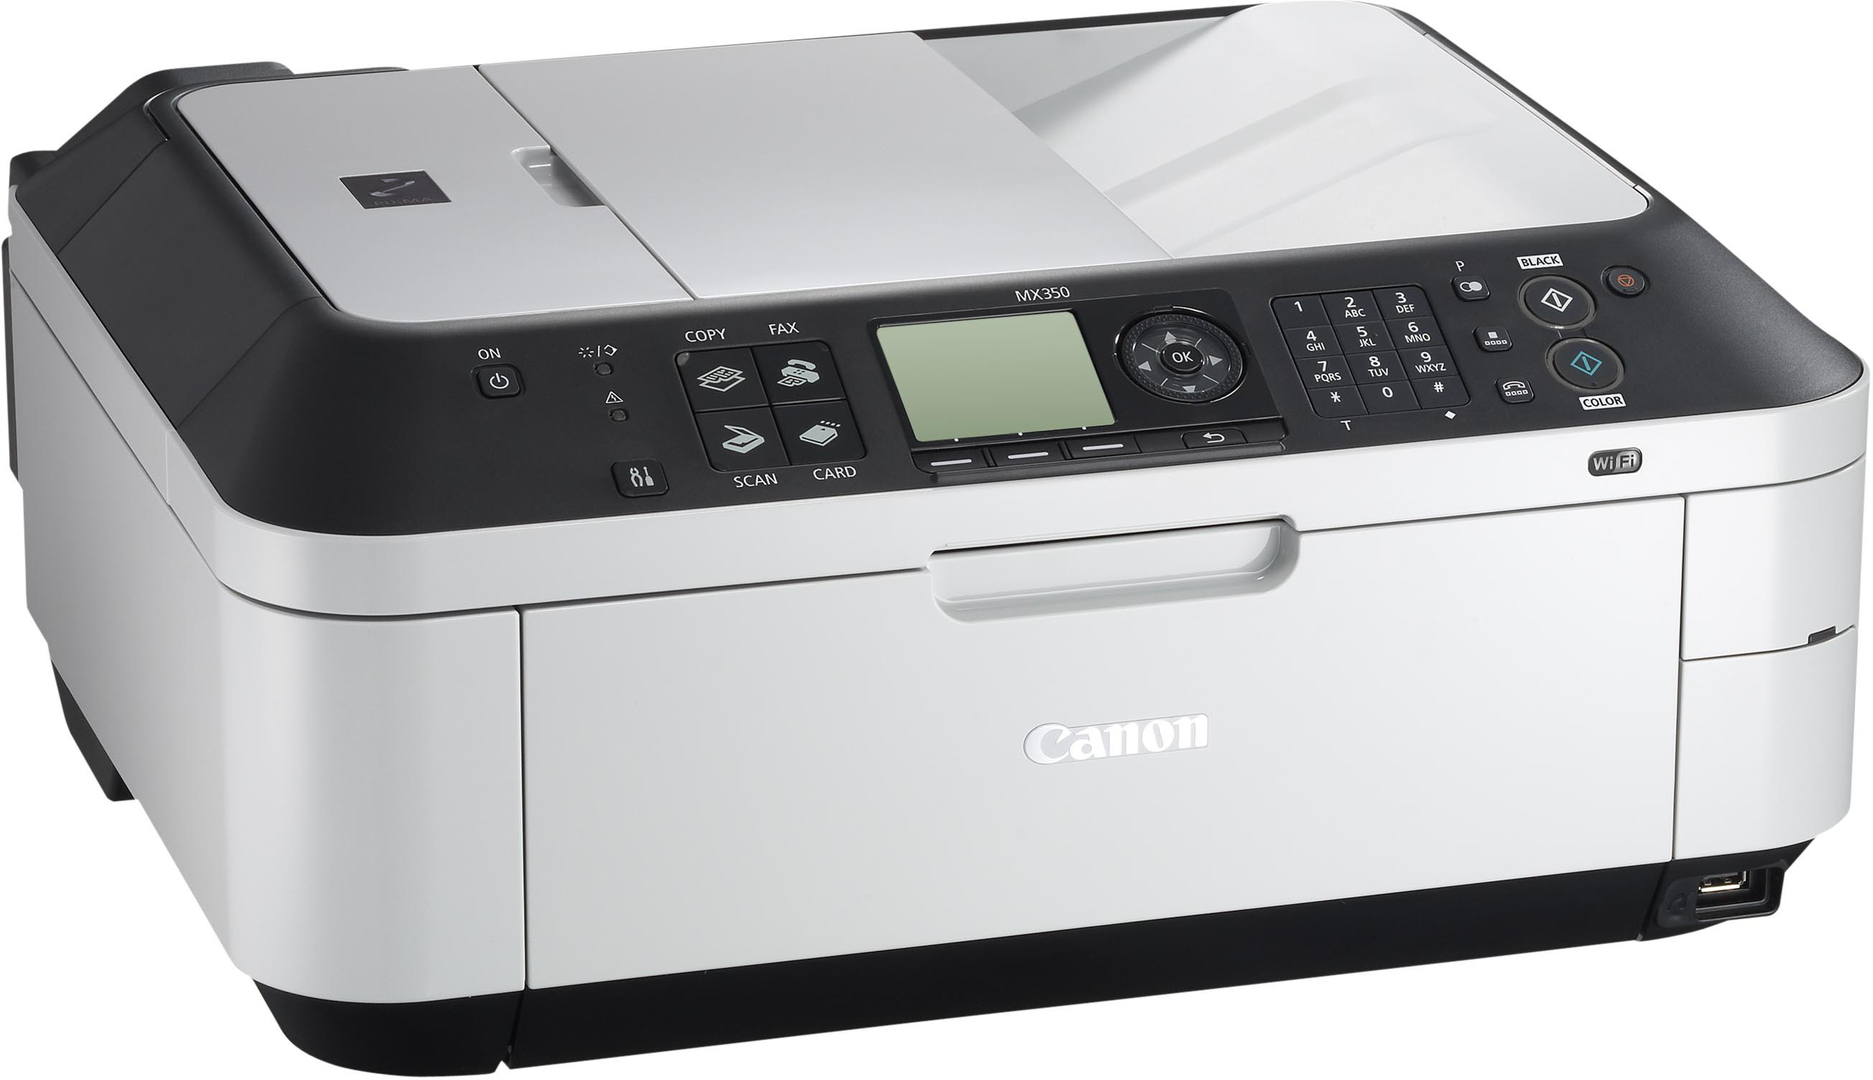 canon mx350 printer driver free download